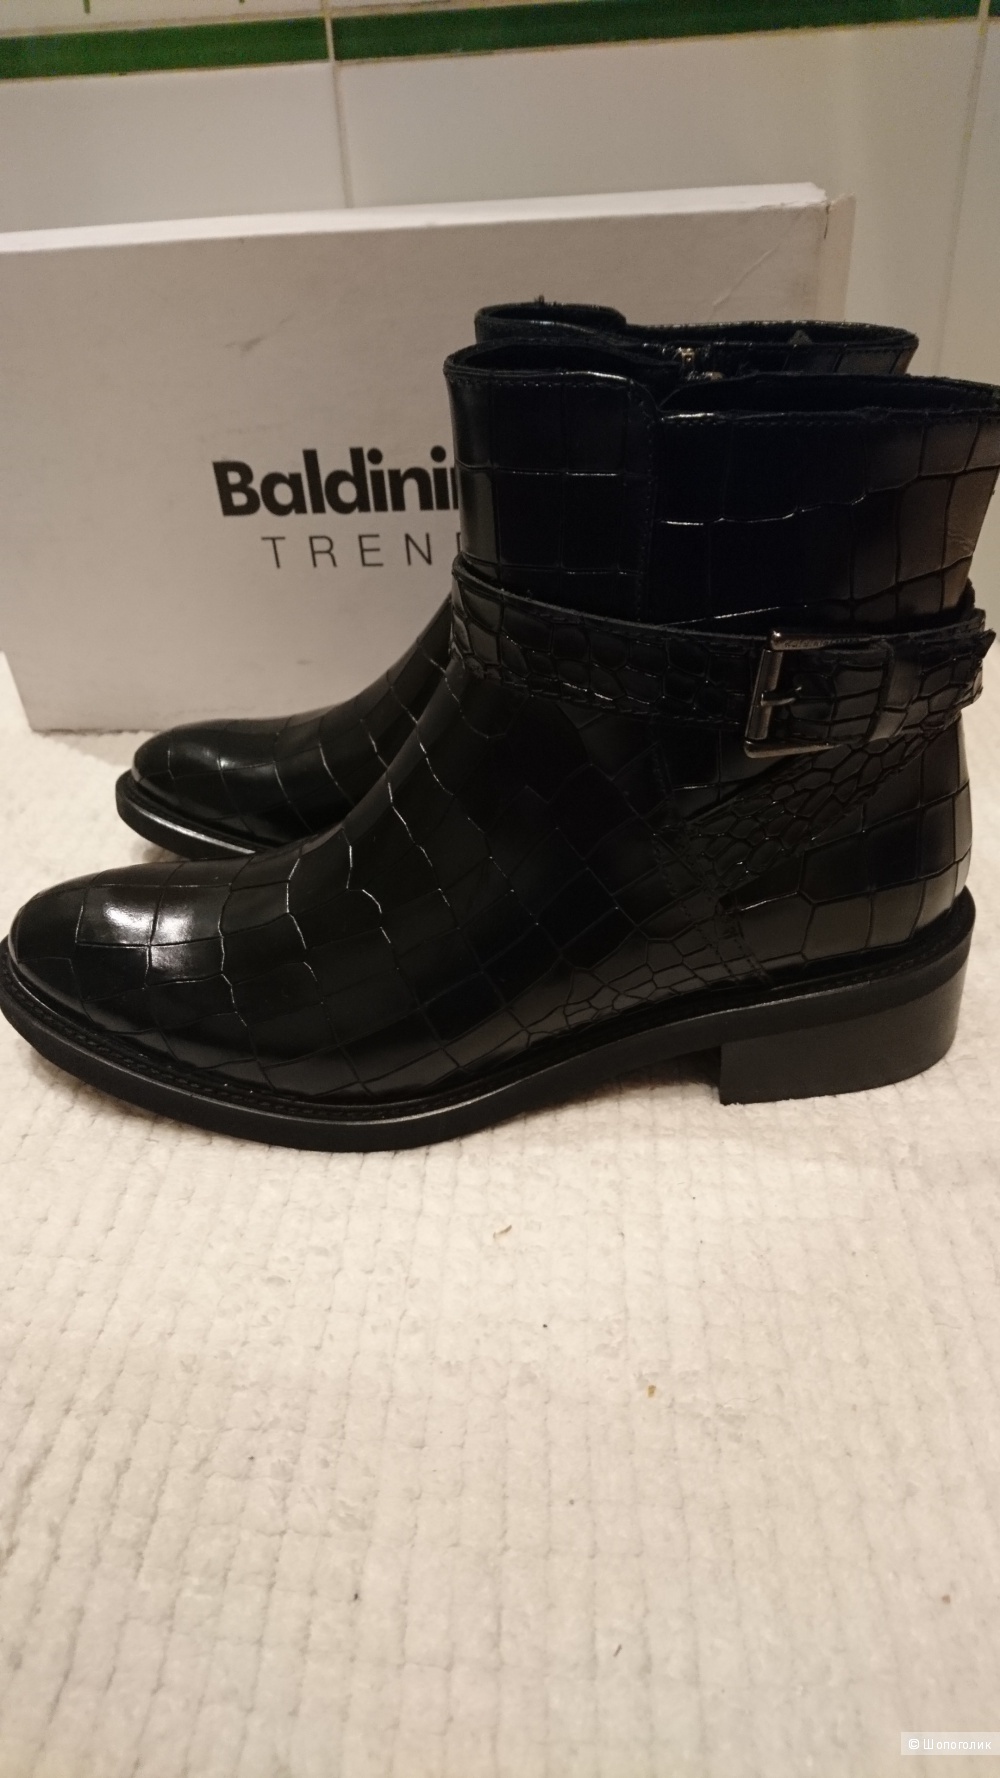 Ботинки Baldinini Trend. размер 37